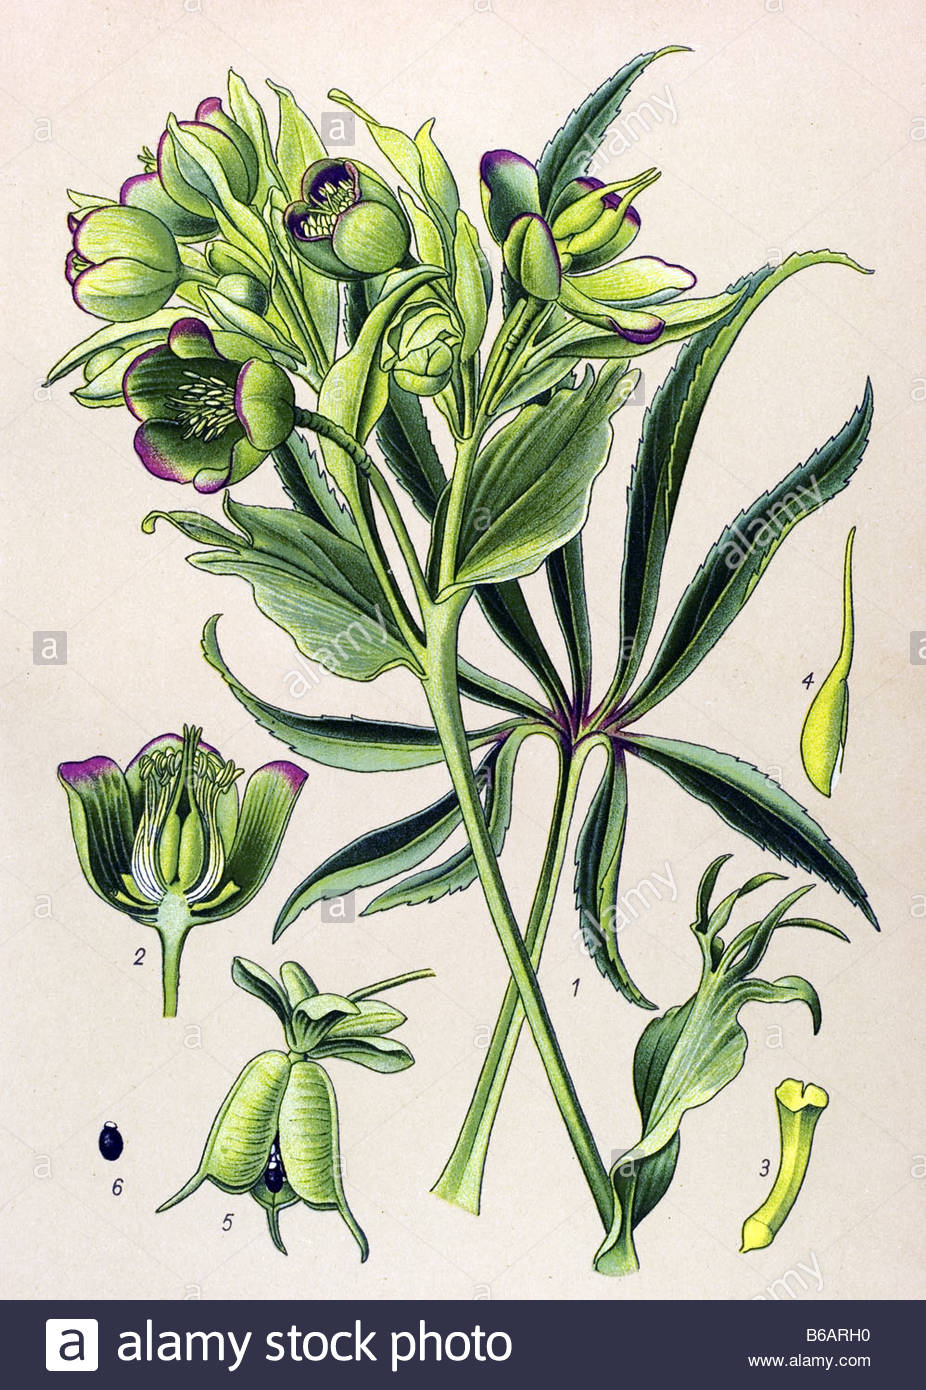 Stinking hellebore, Helleborus foetidus, poisonous plants.